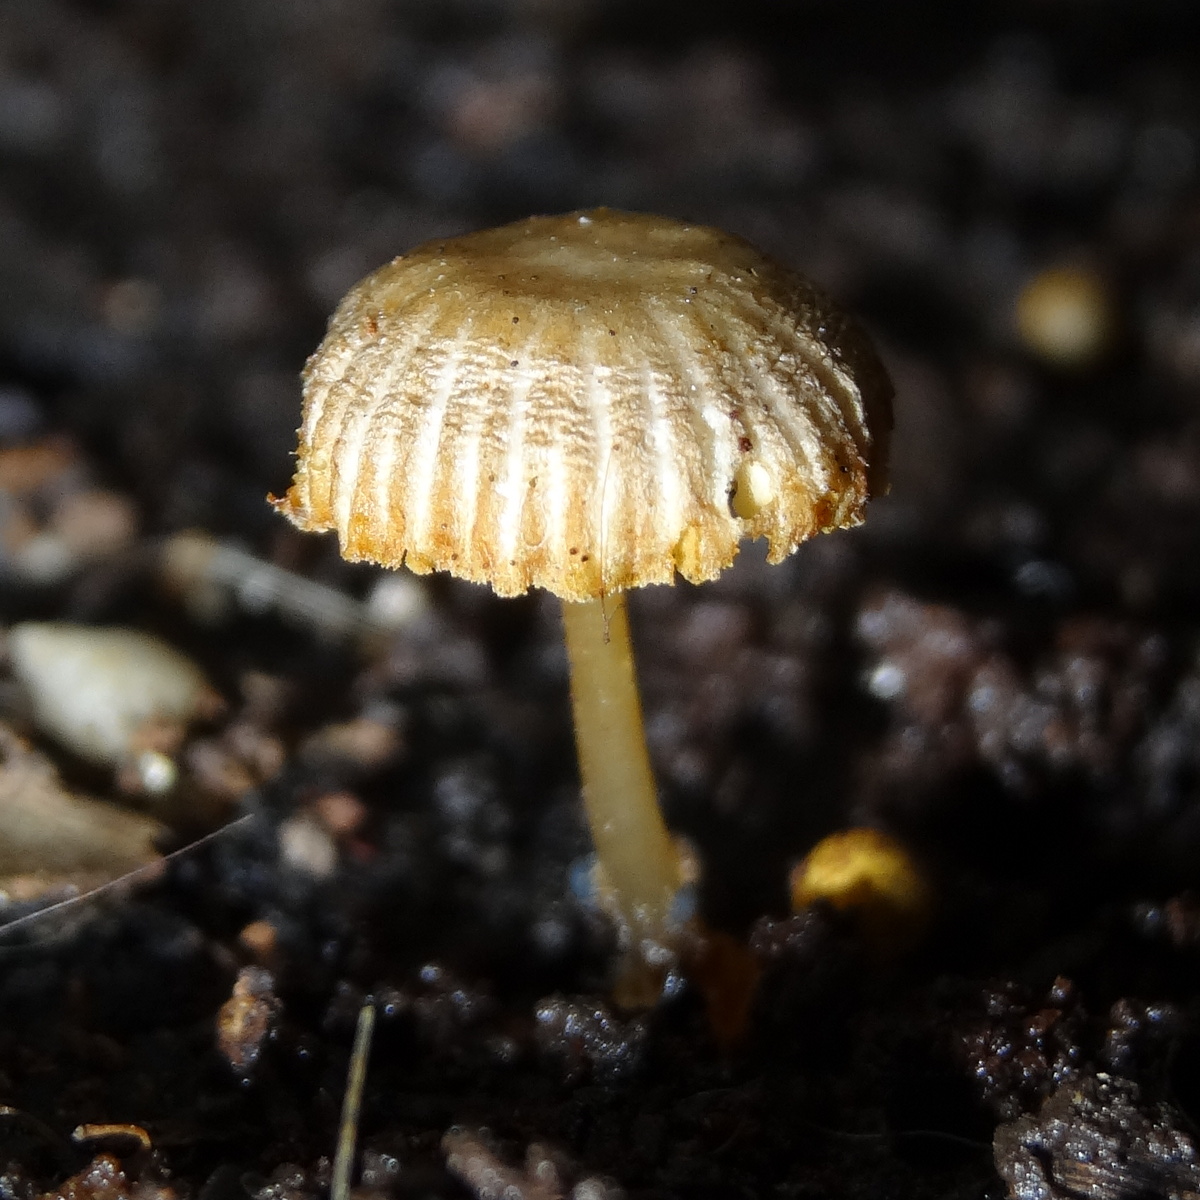 Tiny wood fungus